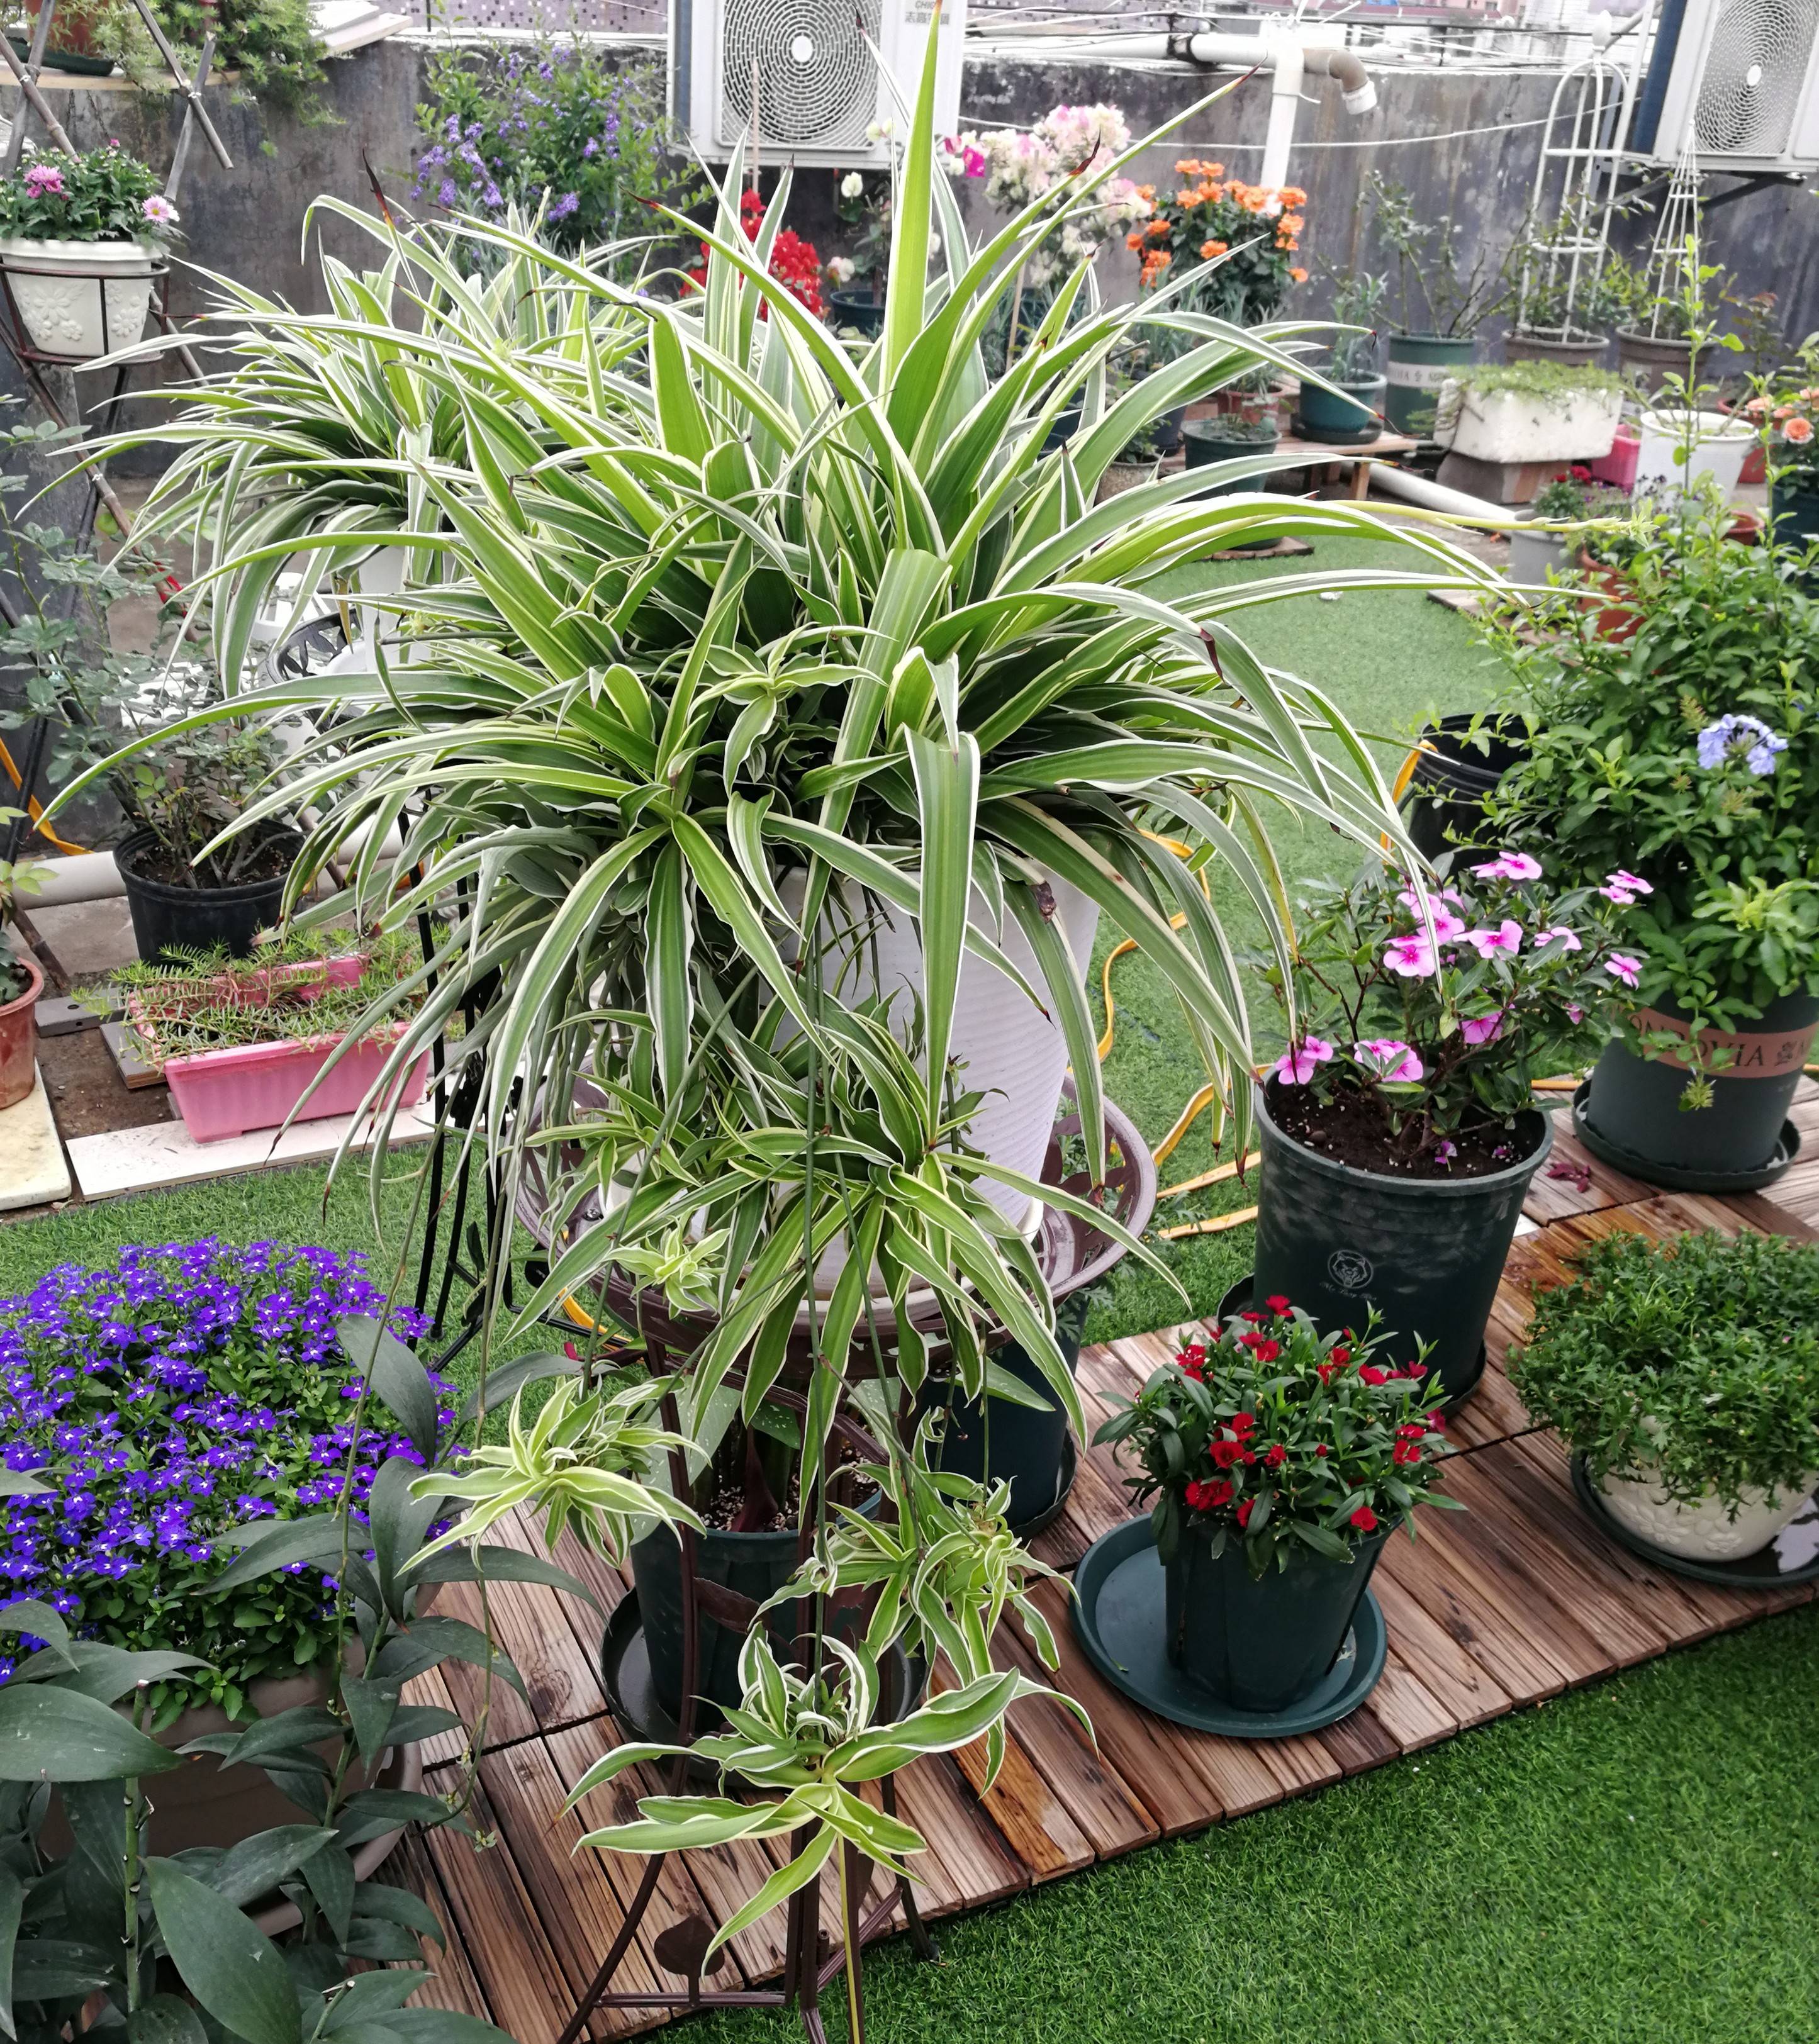 吊兰是一种原产于南非的植物,又称挂兰,还有"空气卫士"的美誉,在西欧